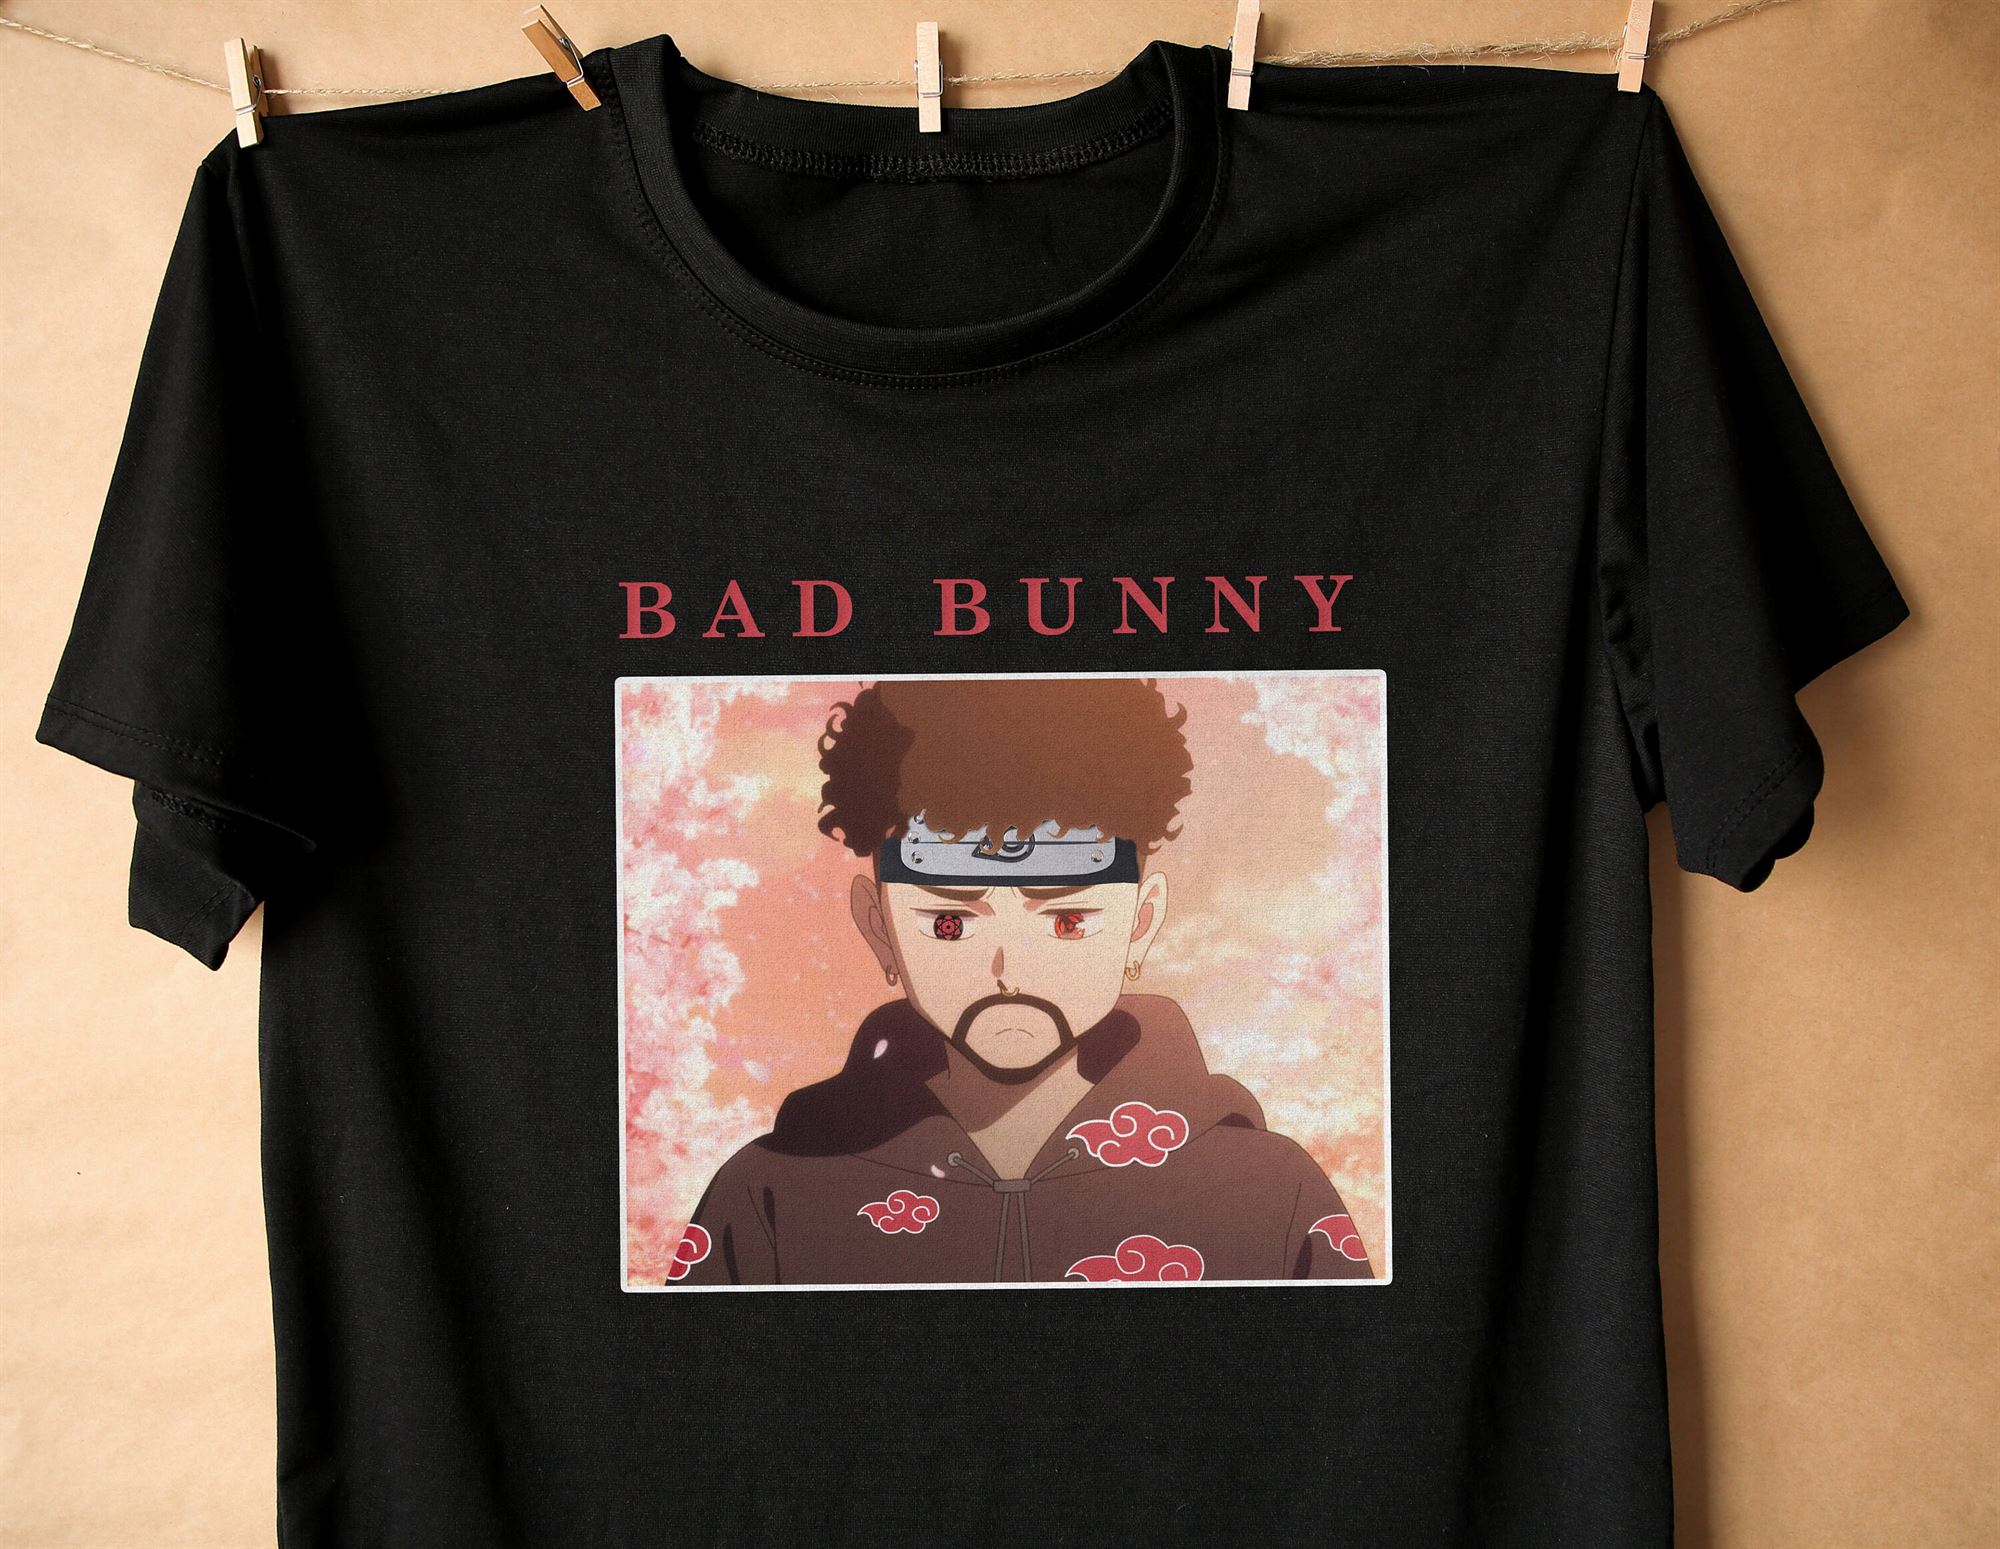 Bad Bunny Itachi Shirtyonaguni Shirtbad Bunny Yonaguni Anime Shirt Yonaguni Bad Bunny Shirt Anime Bad Bunny Shirt